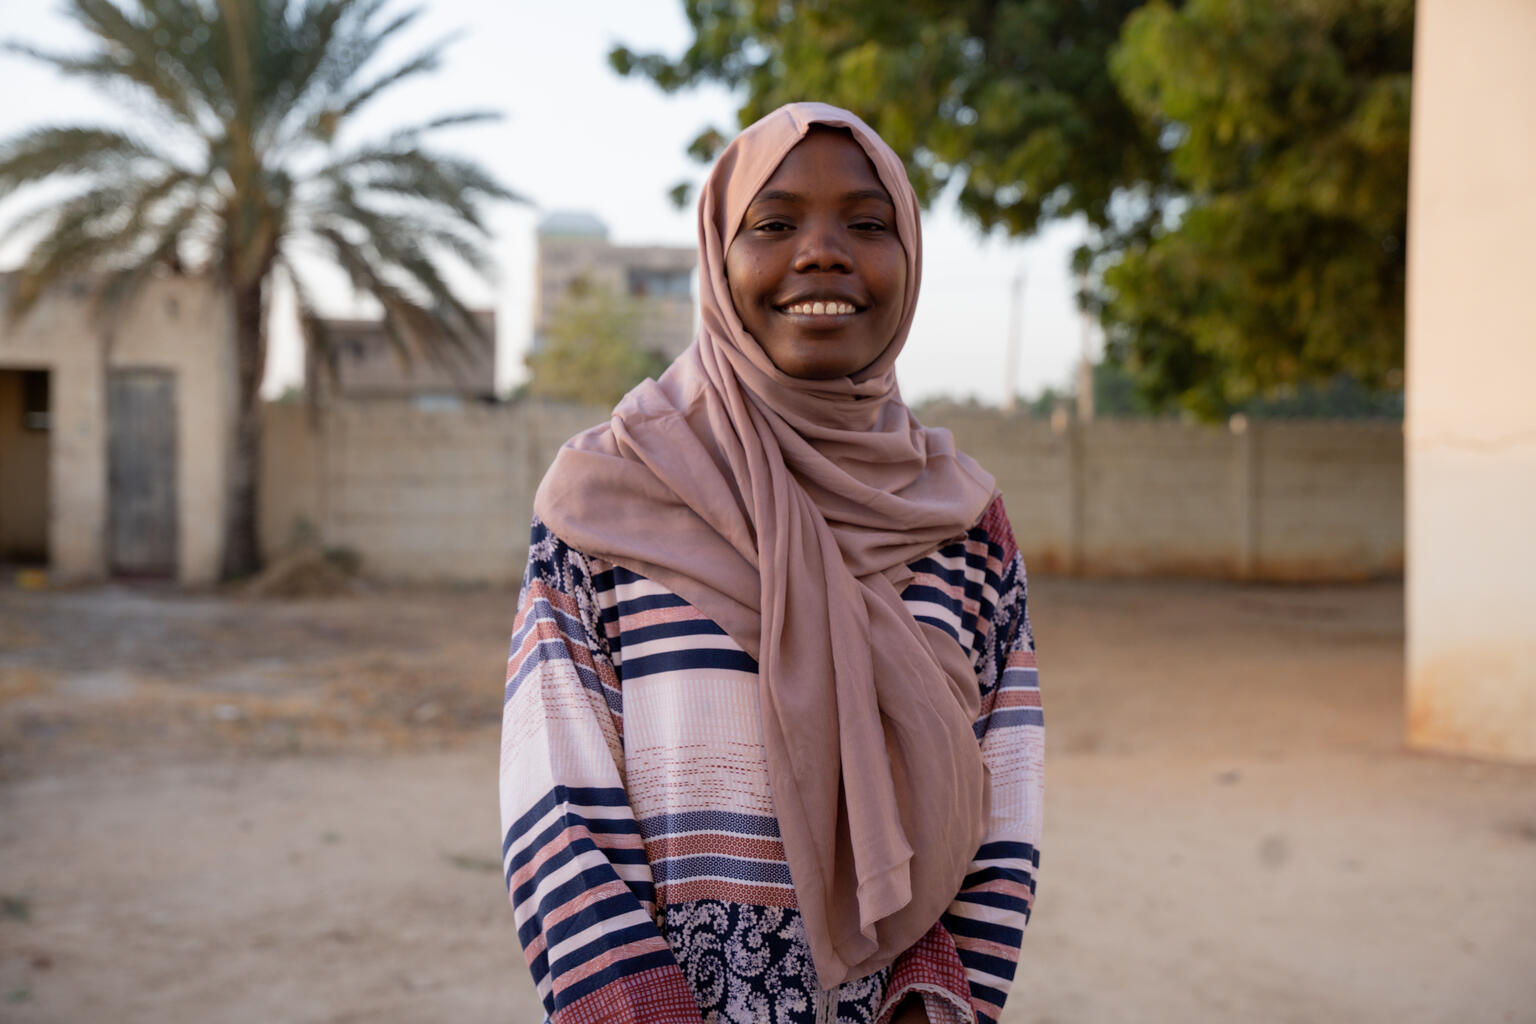 南コルドファンの村で、女性器切除(FGM)や児童婚のような伝統的な慣習が有害であることについて学んだ20歳のハリマさん。